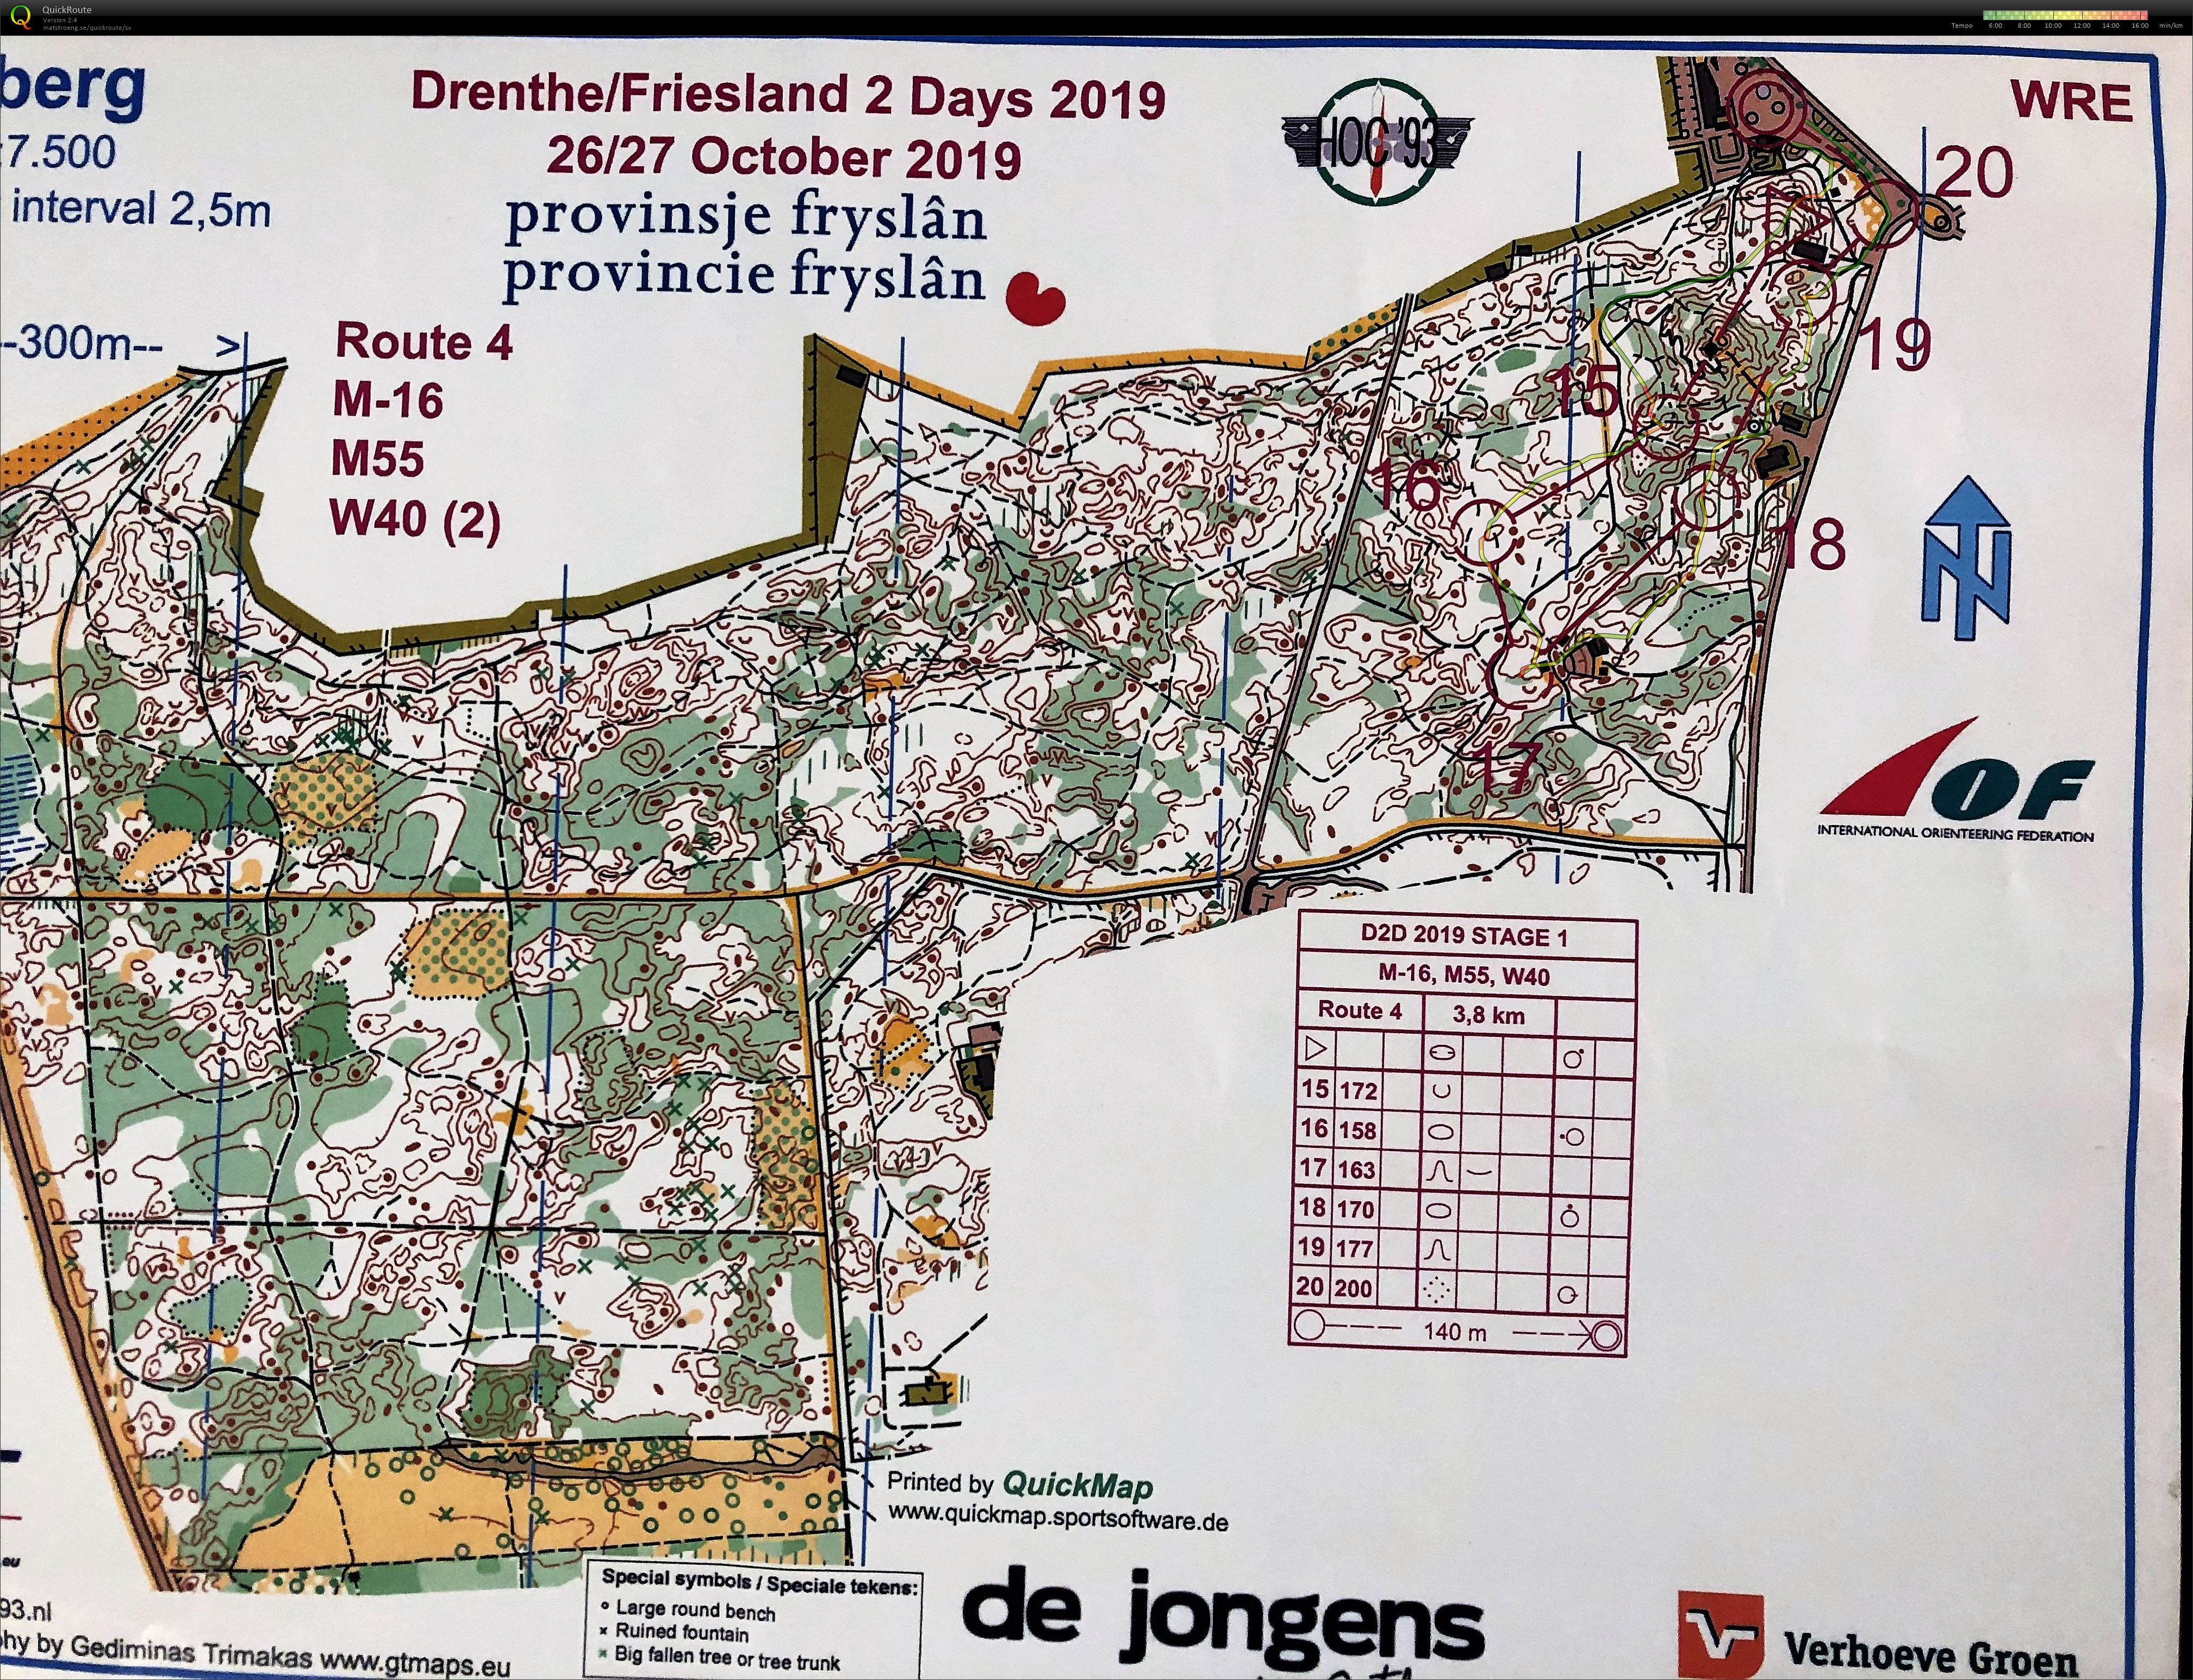 Drenthe 2days Medel del2 (2019-10-26)